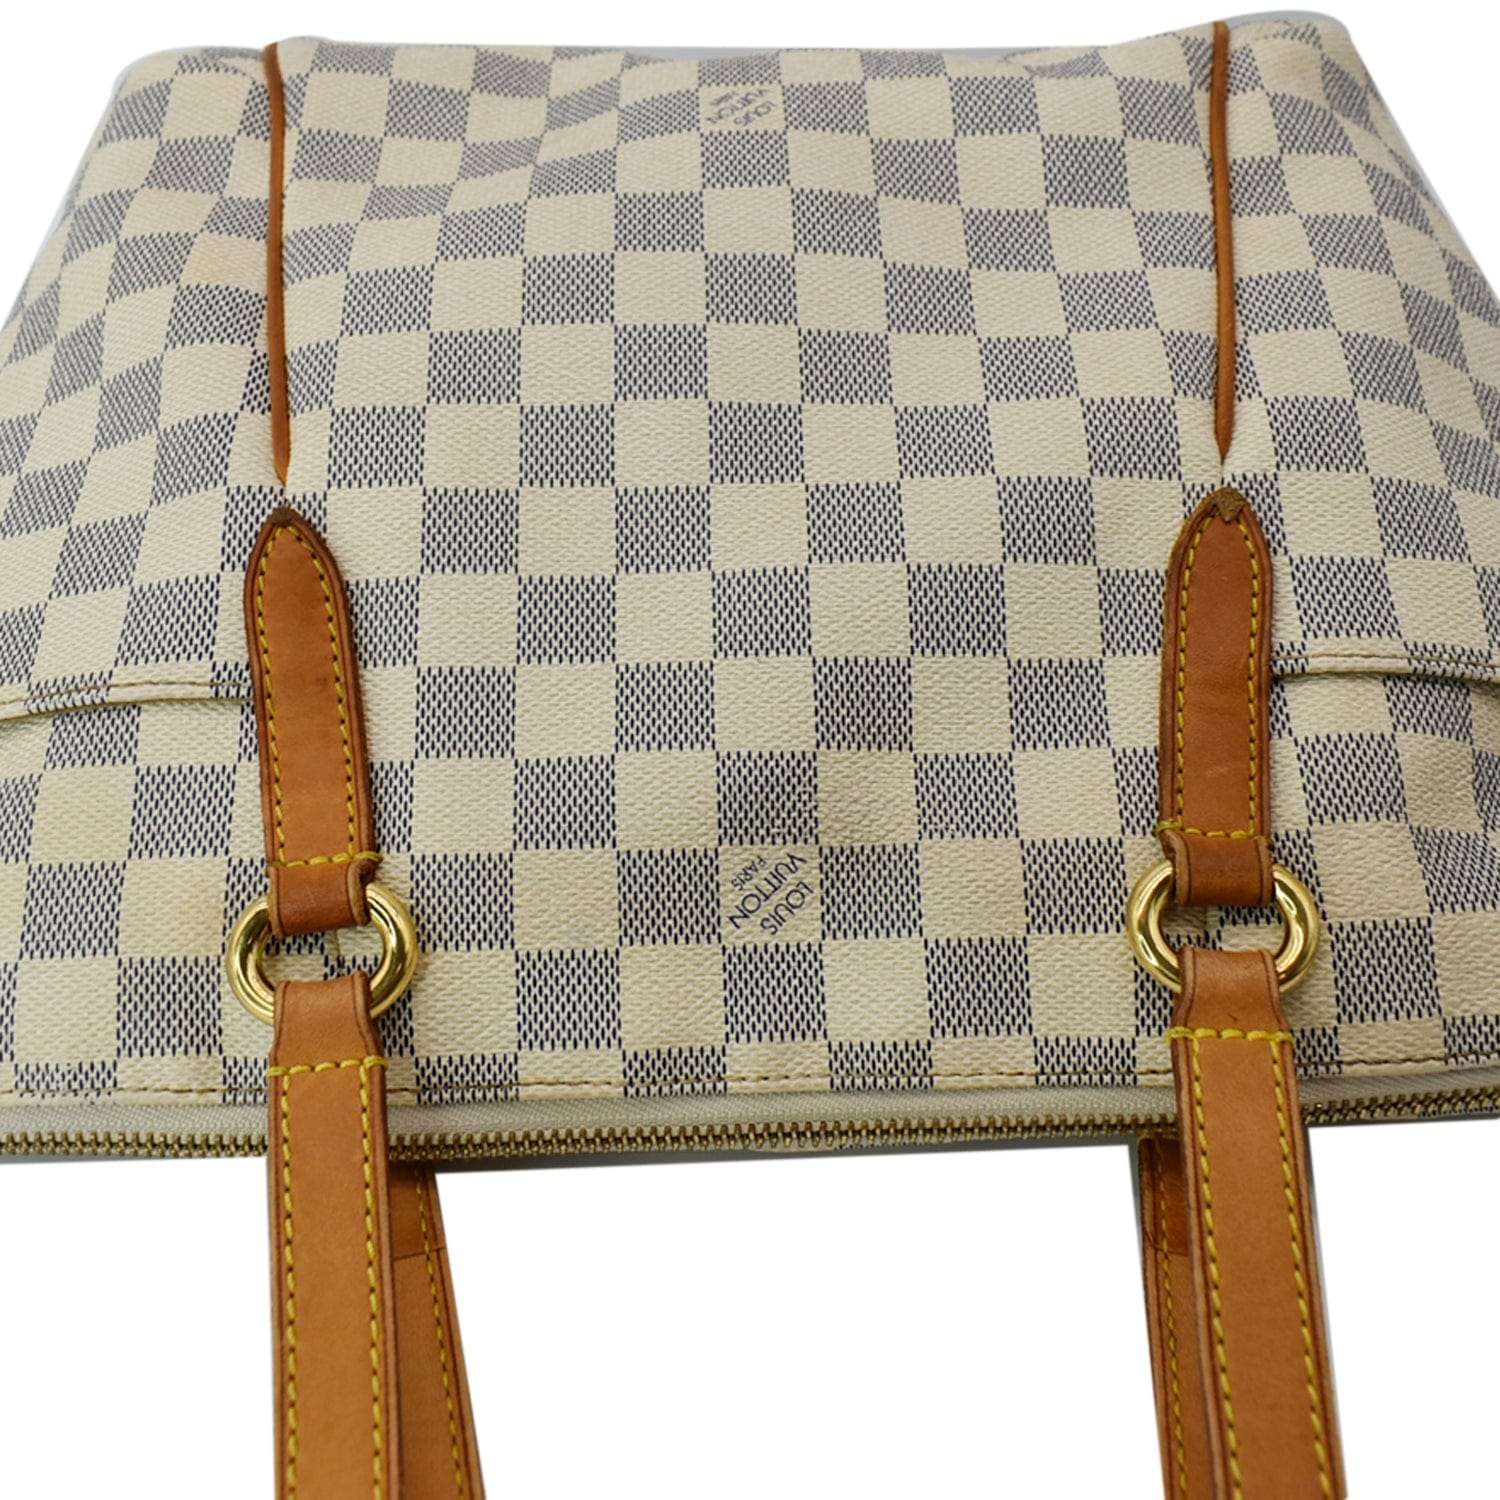 Buy LV Women White Handbag Damier Azur Online @ Best Price in